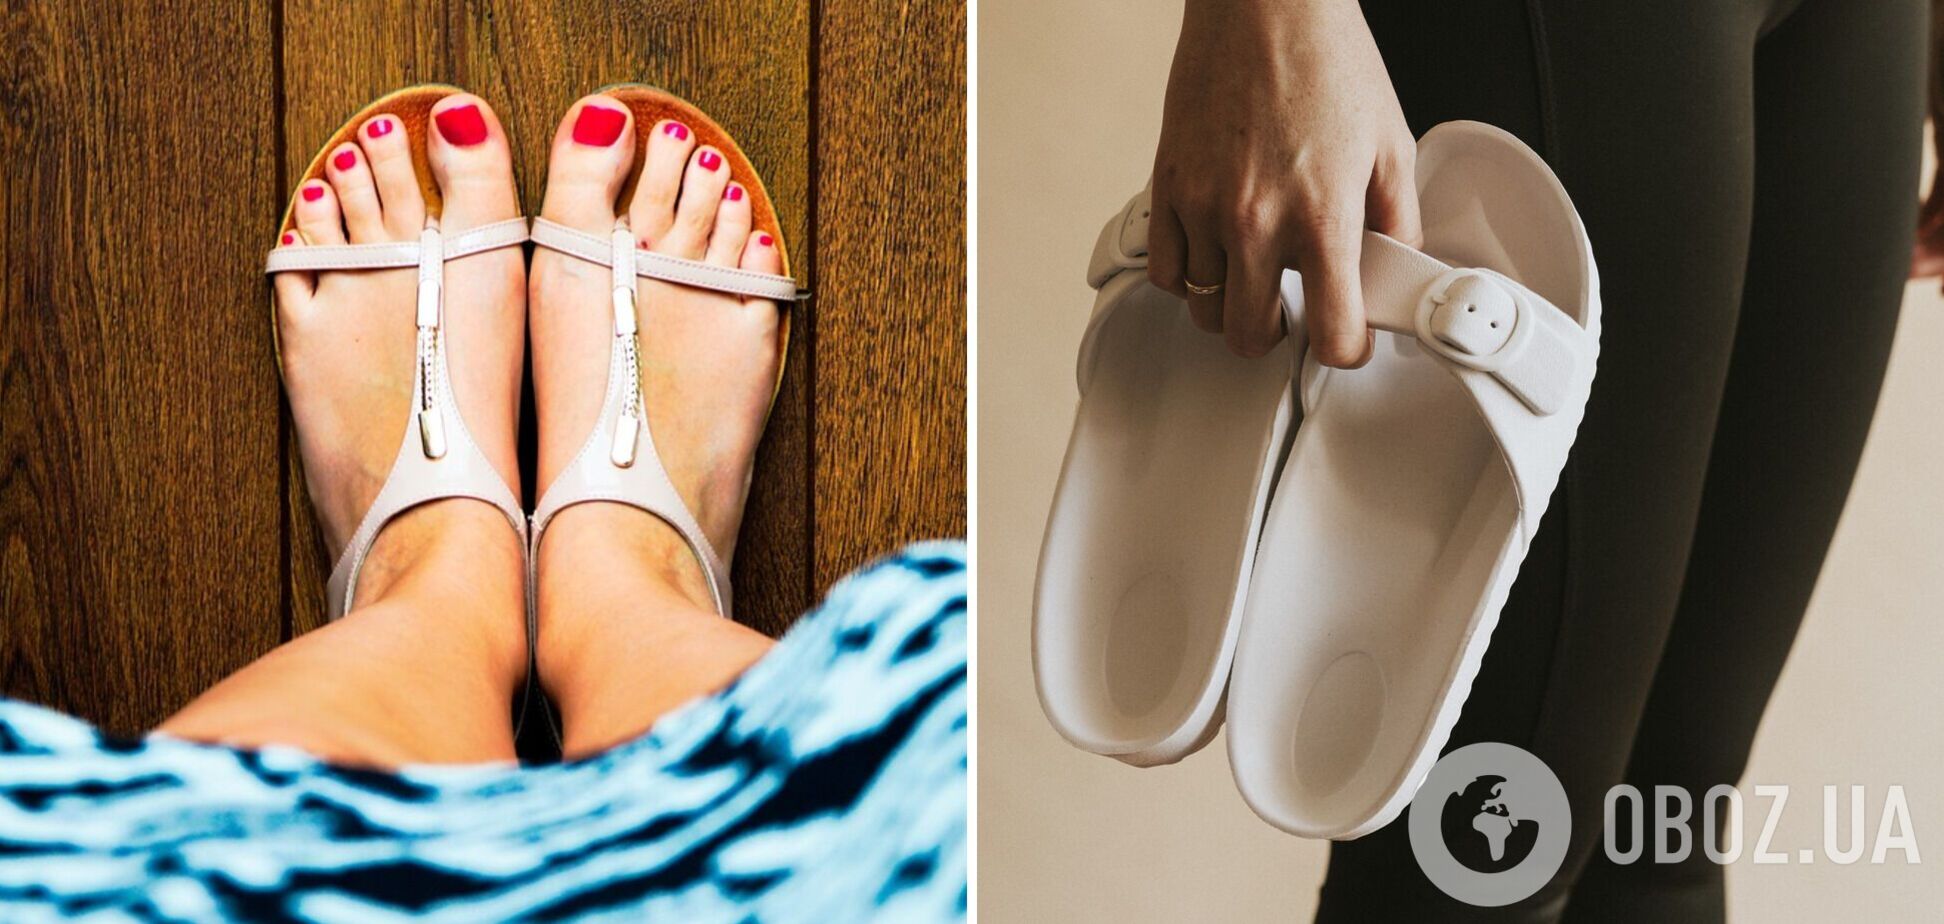 Дарит легкость и выглядит элегантно: три лучших варианта обуви на лето, которые легко заменят сандалии. Фото